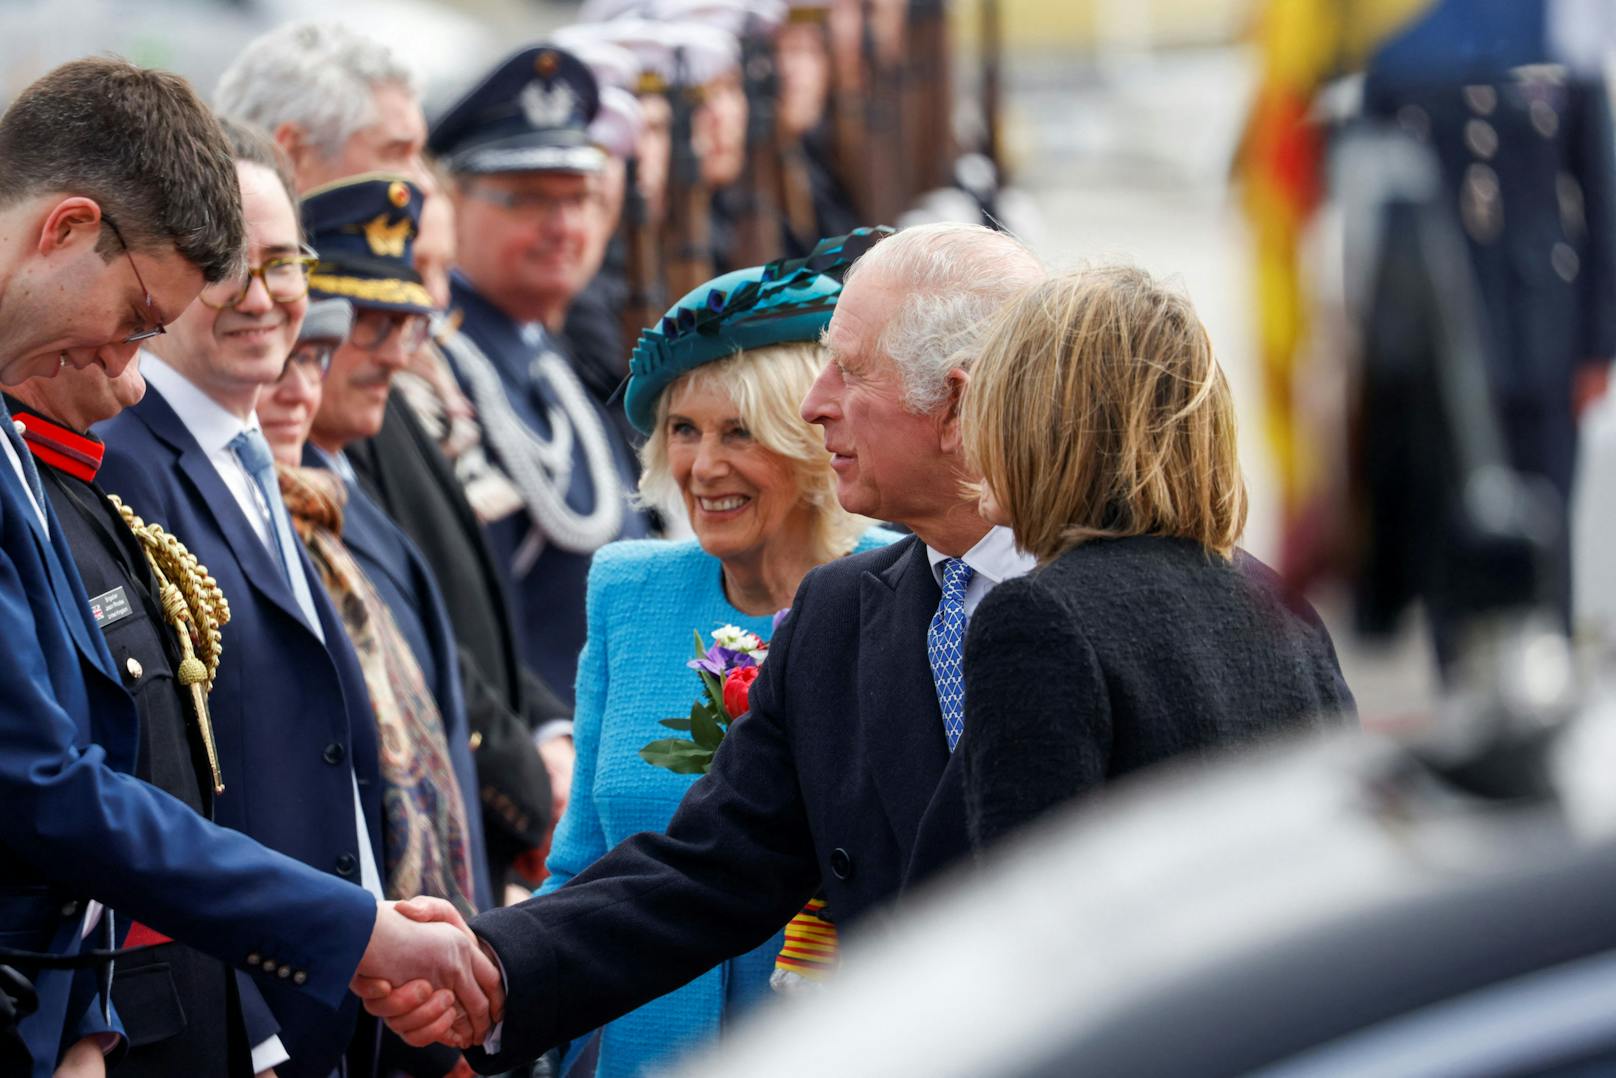 King Charles und Camilla nahmen sich die Zeit, einige Leute persönlich zu begrüßen.